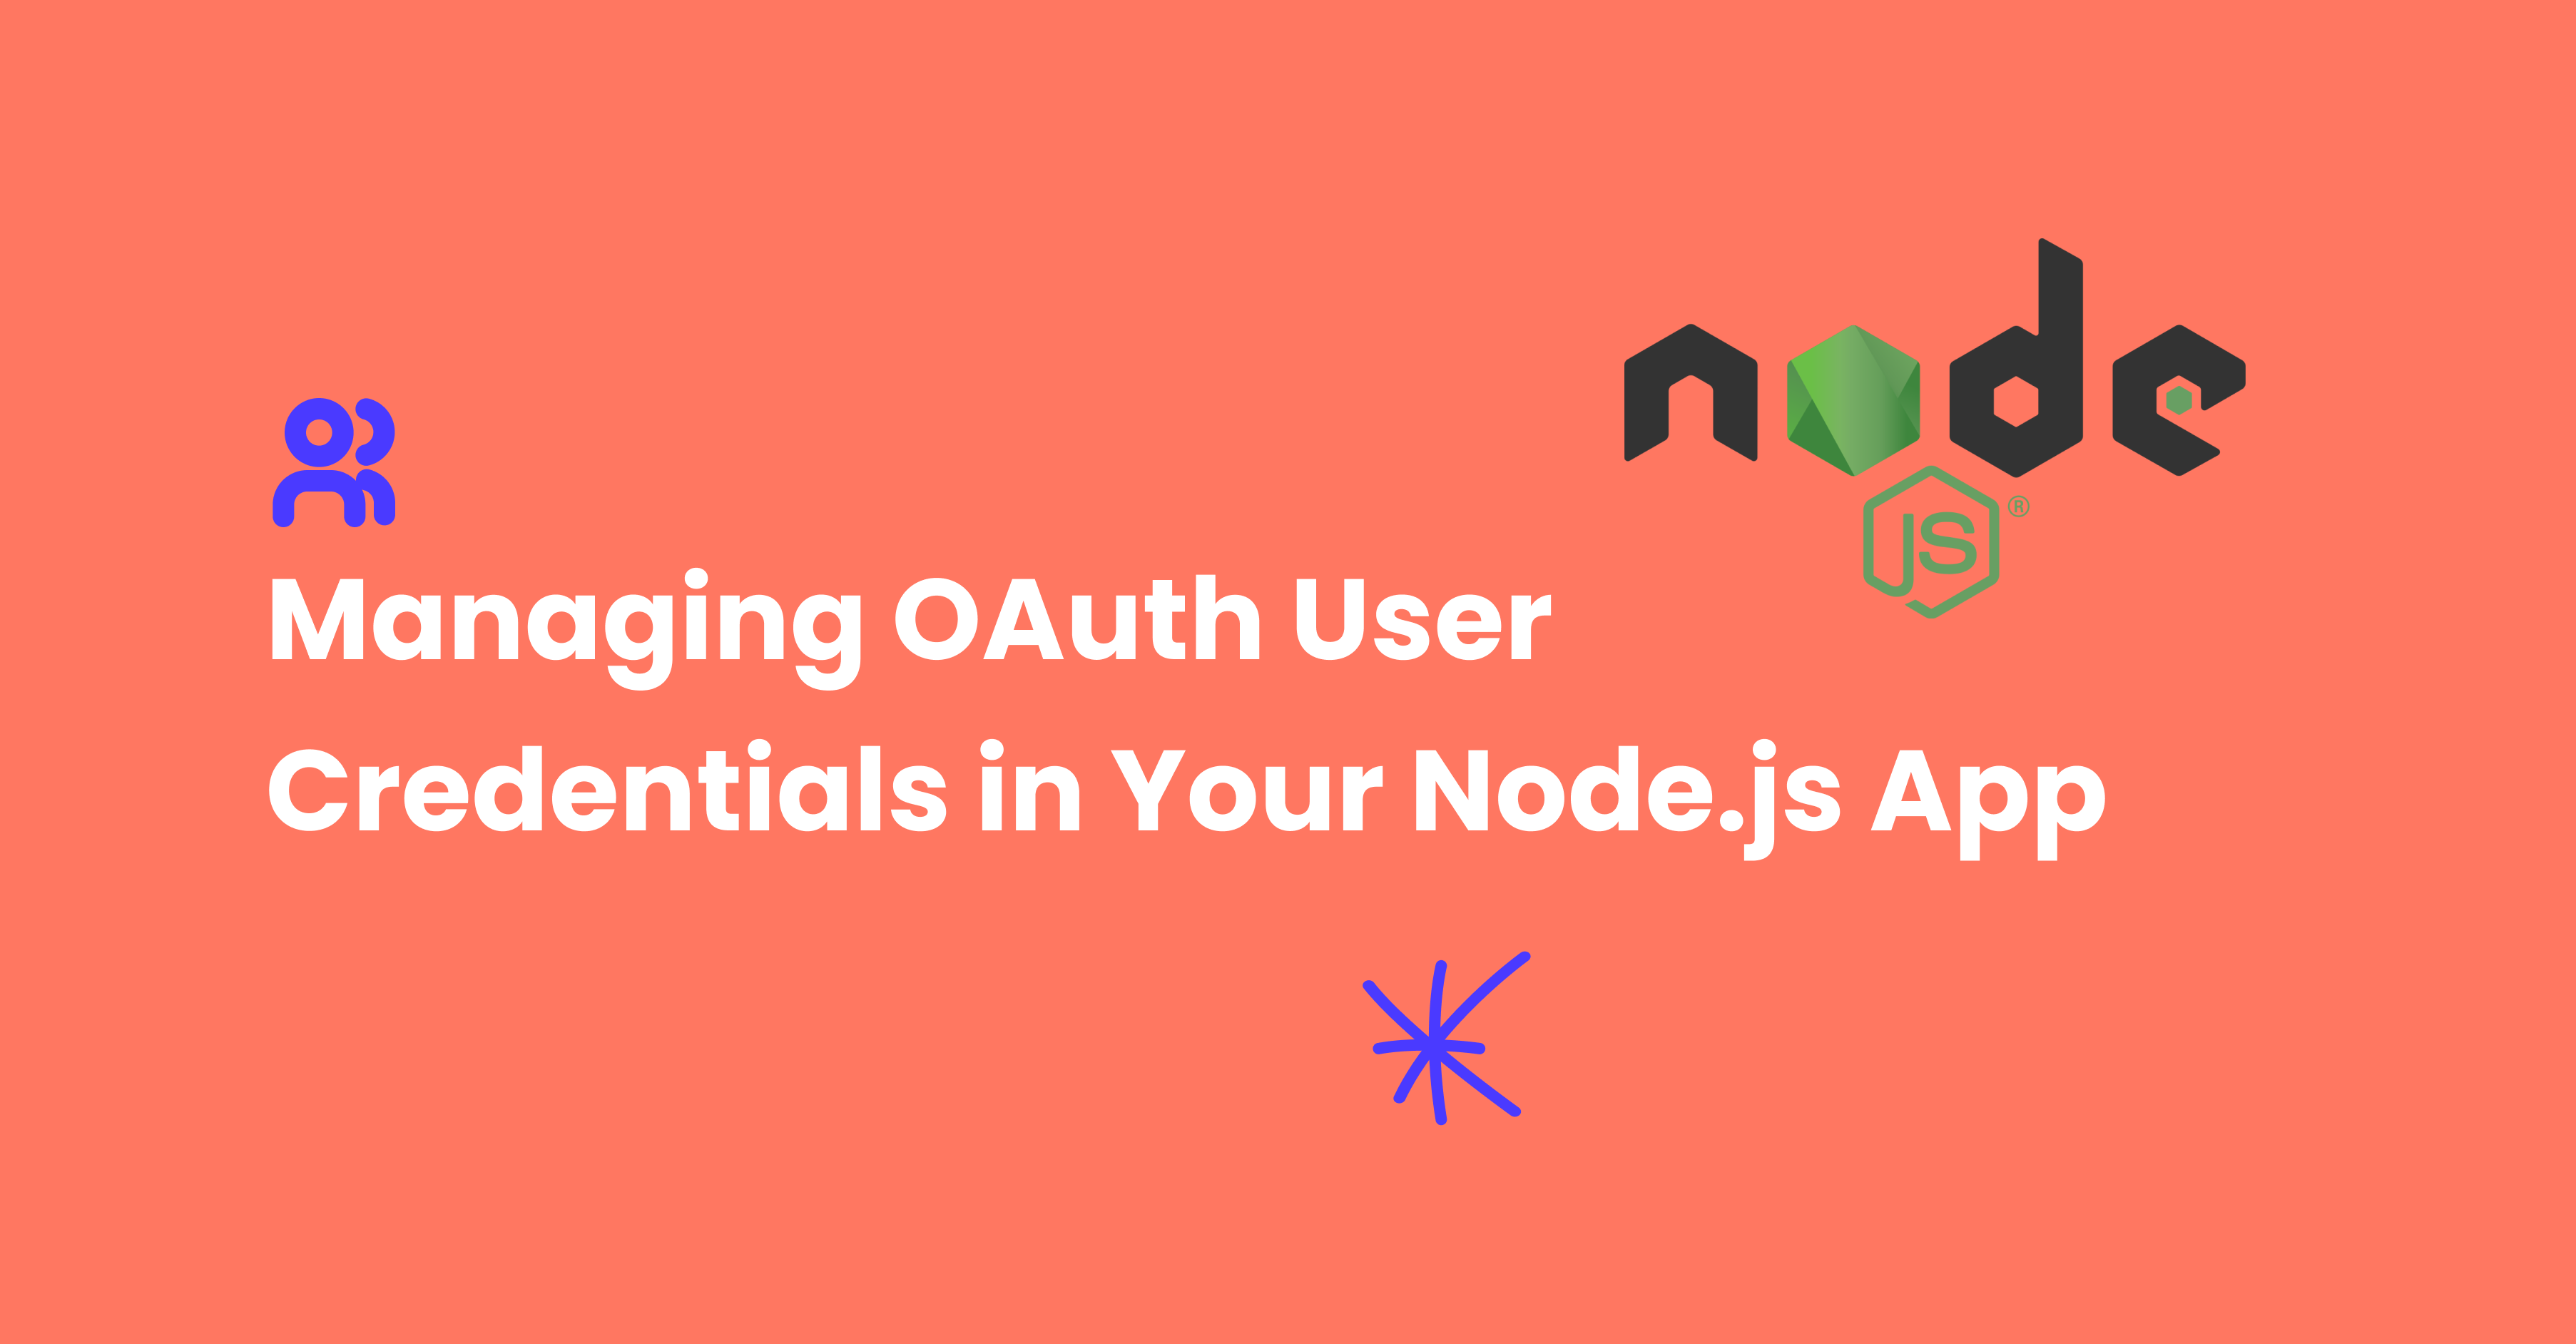 Managing OAuth User Credentials in Your Node.js App